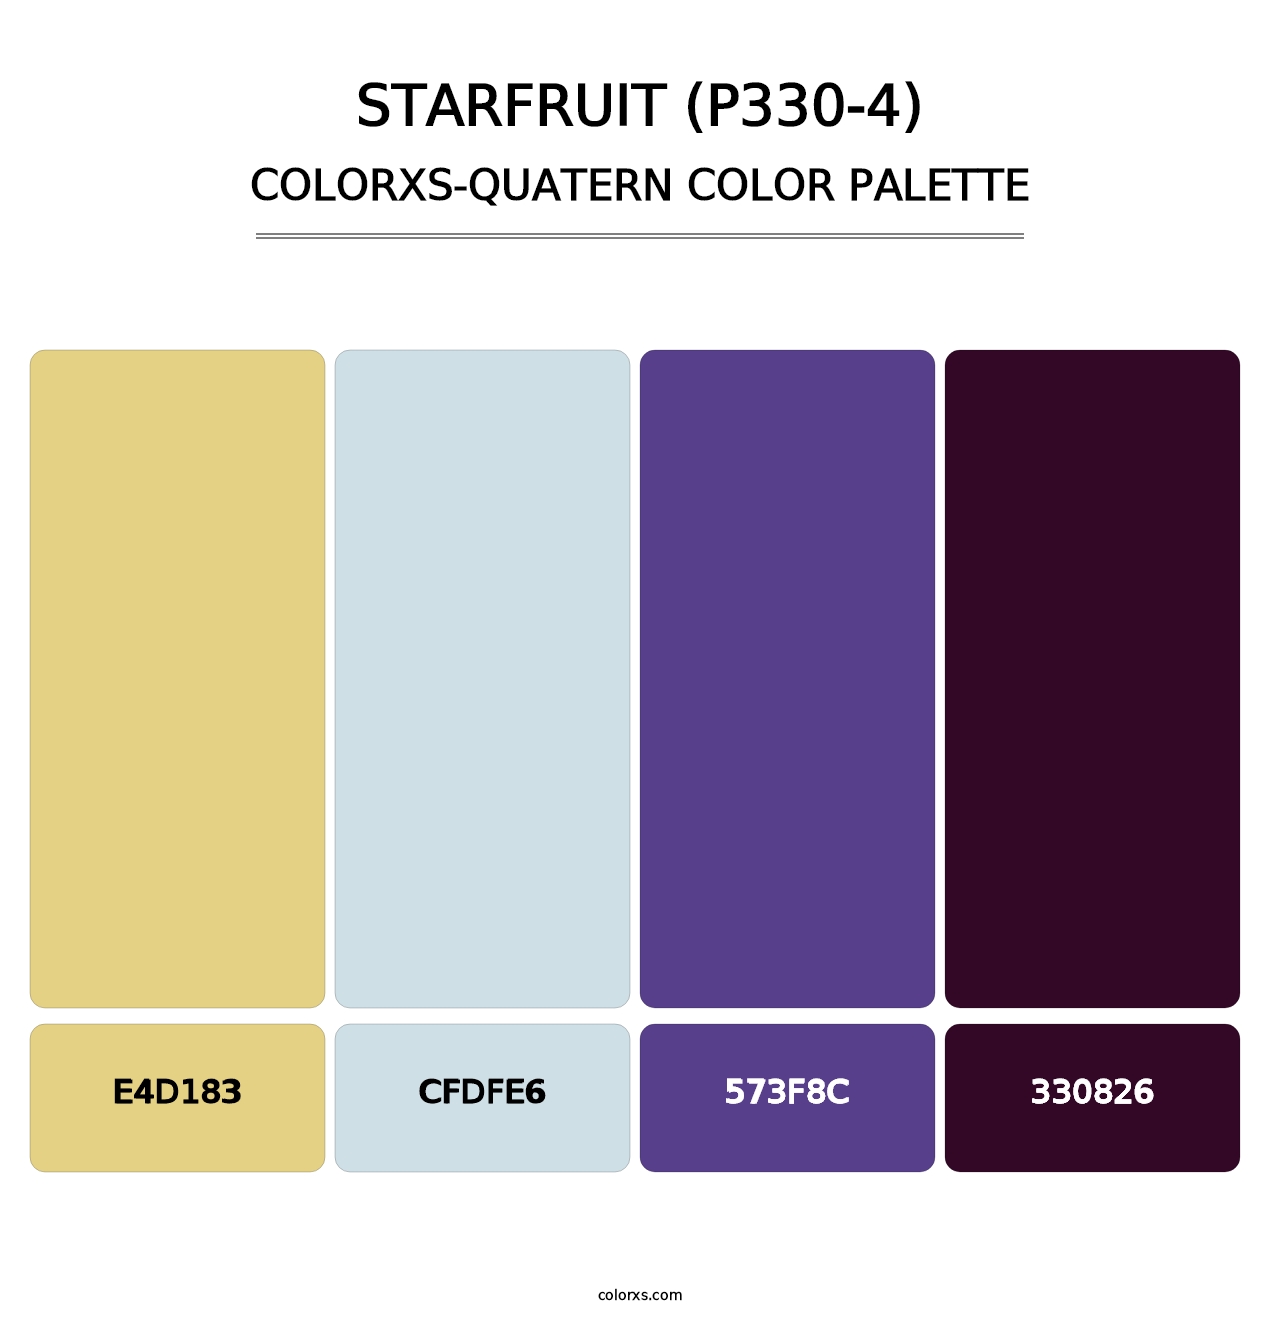 Starfruit (P330-4) - Colorxs Quatern Palette